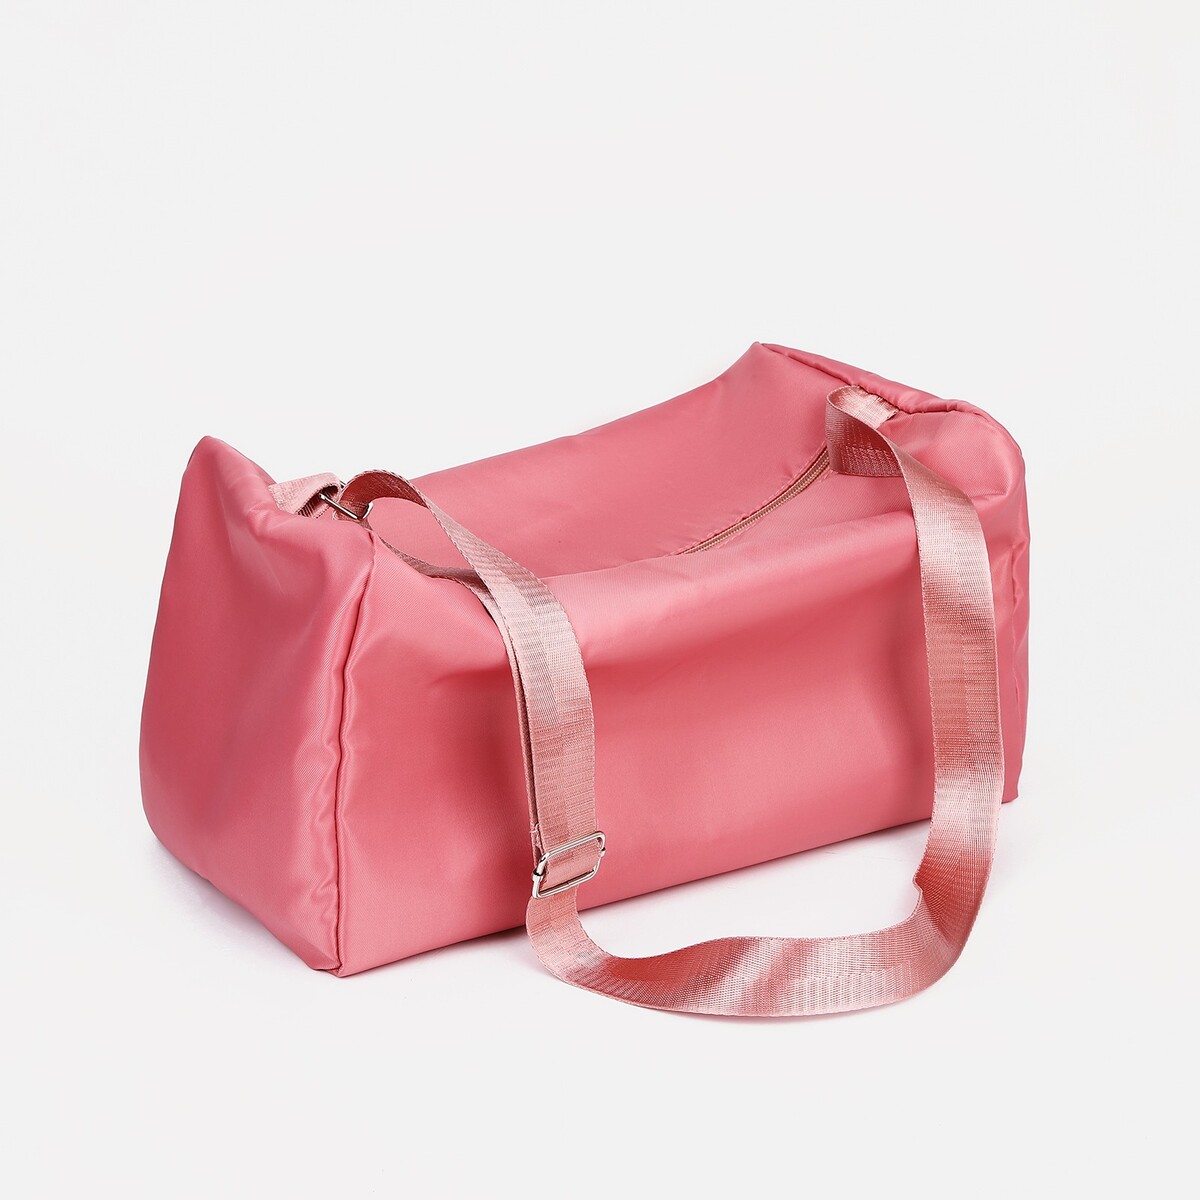 Сумка спортивная на молнии, регулируемый ремень, цвет розовый сумка спортивная на молнии регулируемый ремень розовый